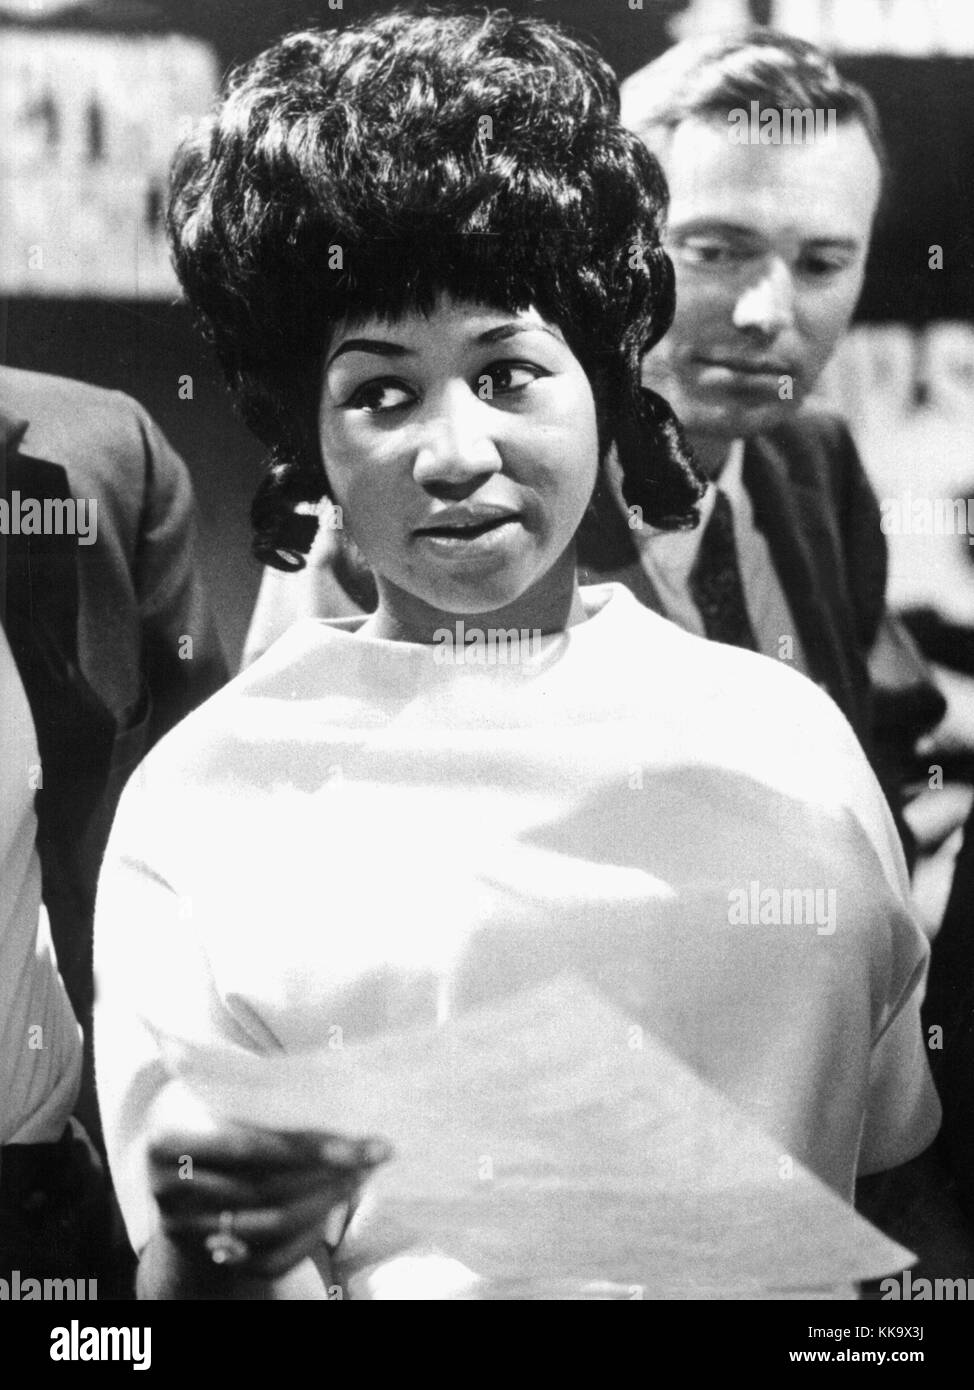 El cantante de blues y soul estadounidense Aretha Franklin durante las grabaciones de un programa de televisión en un studio de colonia, fotografiado el 13 de mayo de 1968. Uso | en todo el mundo Foto de stock